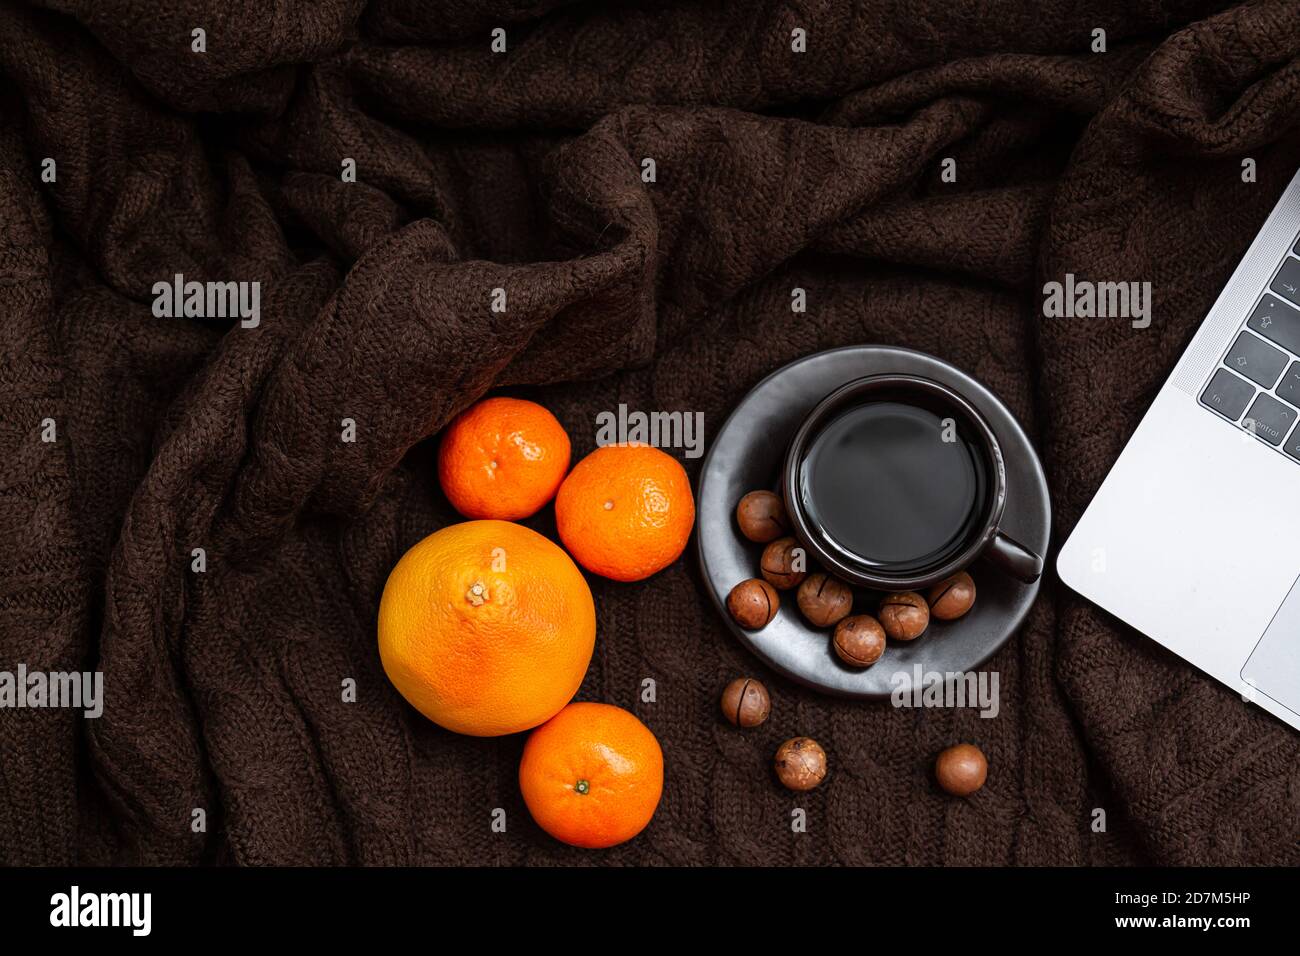 Ambiance chaleureuse. Ordinateur portable, tasse de café avec mandarines et noix sur fond de couverture tricoté marron Banque D'Images